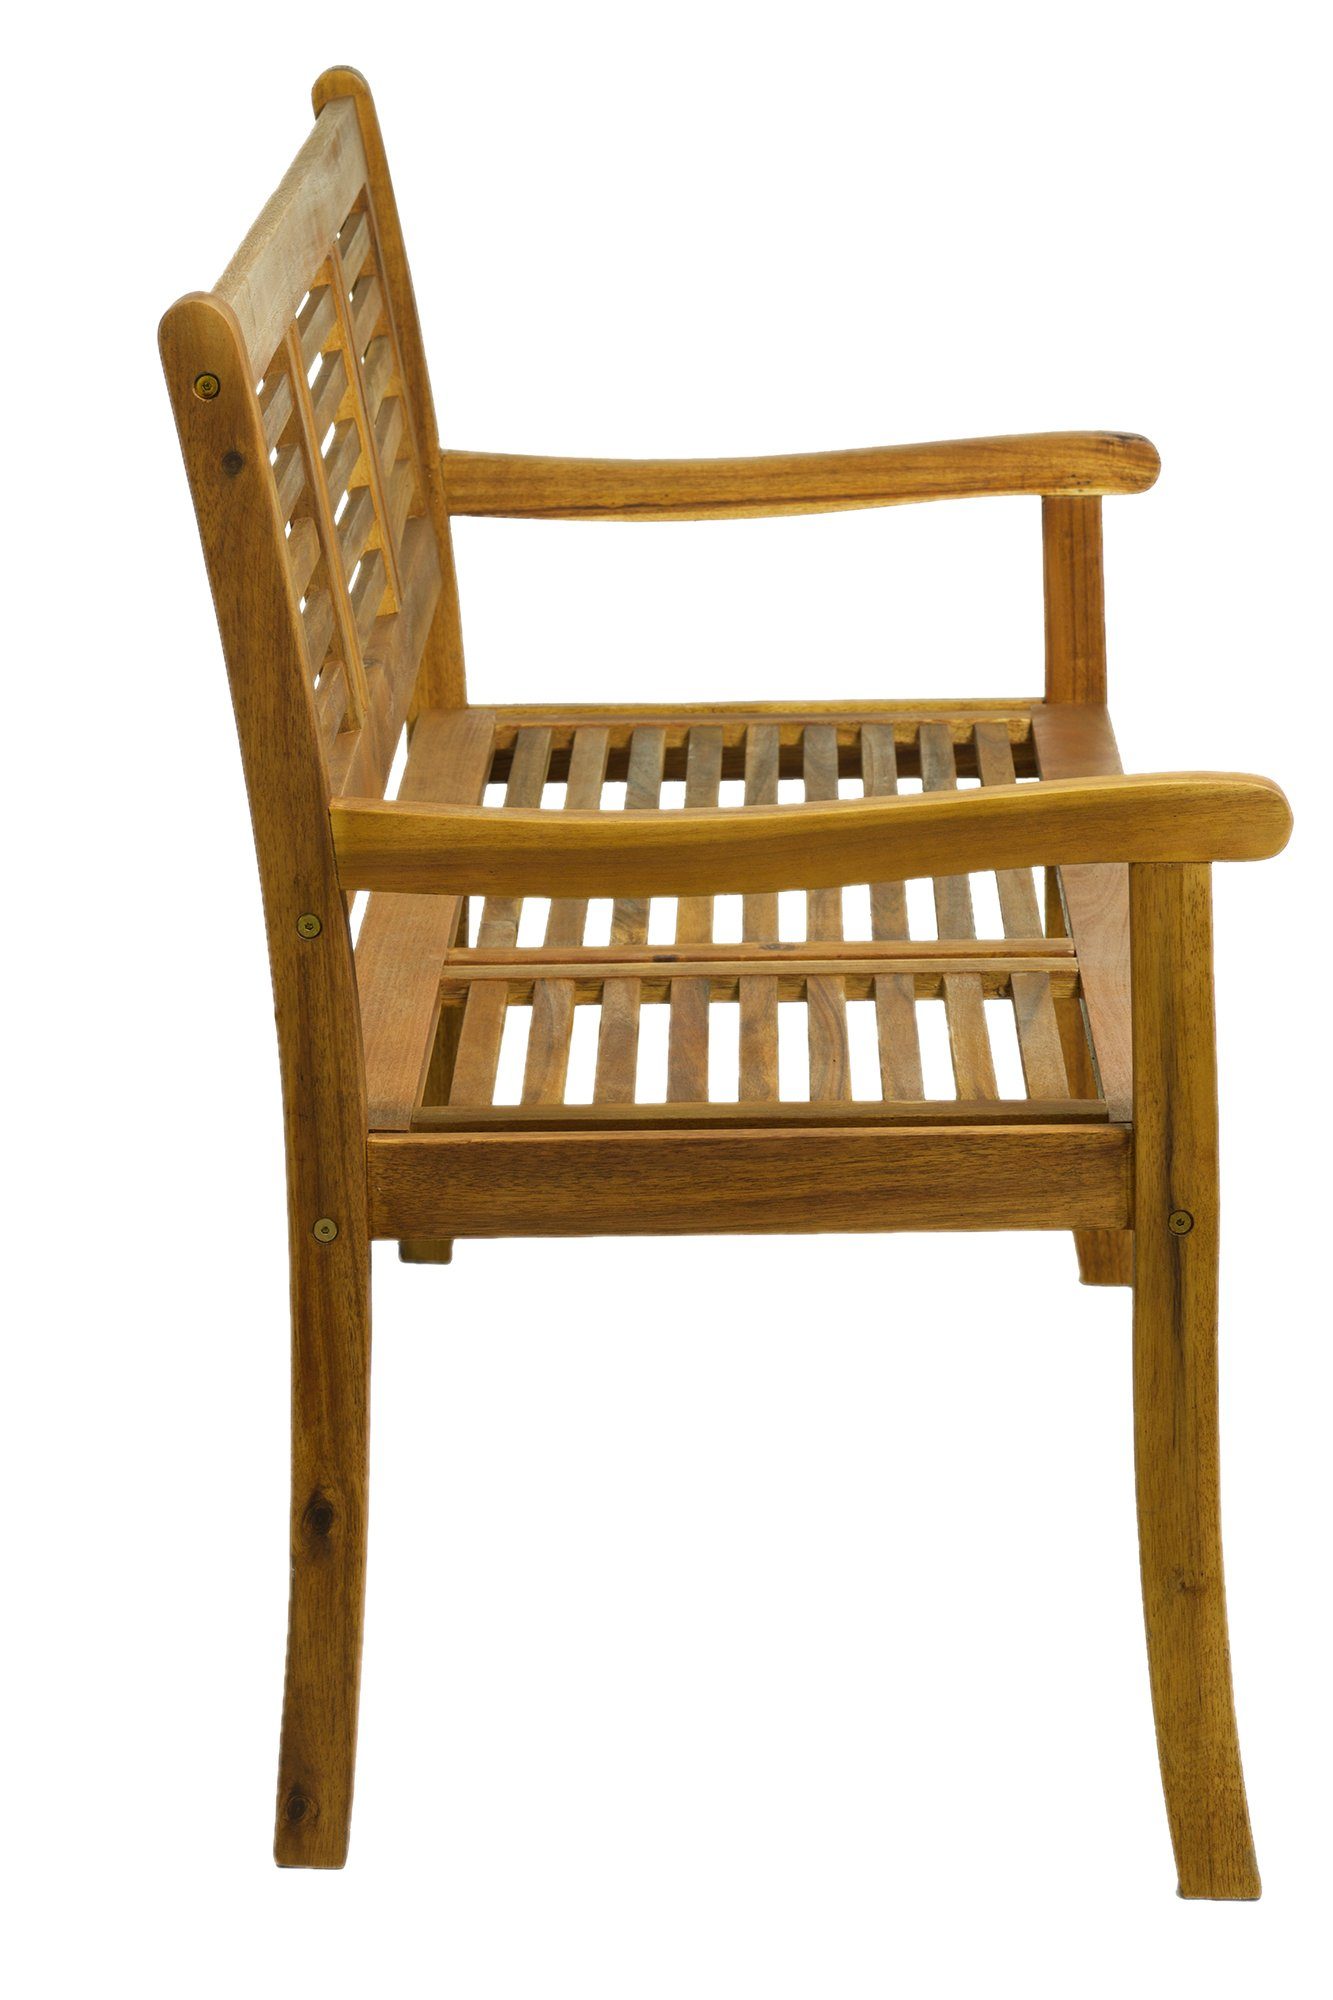 Sitzgruppe - 150x92x68 Stühle und - - 1 Stühlen, Esstisch, natur), 56x108x74 TPFGarden Tisch Gartenessgruppe 150x75x100 cm mit Bank: 5-tlg., Sitzgruppe klappbar, Maße 1 Akazienholz, (Ausziehbarer verstellbar, Bank - Farbe: (BxHxT): Tisch AKANA Stühle 2 Balkon Stuhllehnen geöltem 5-fach aus